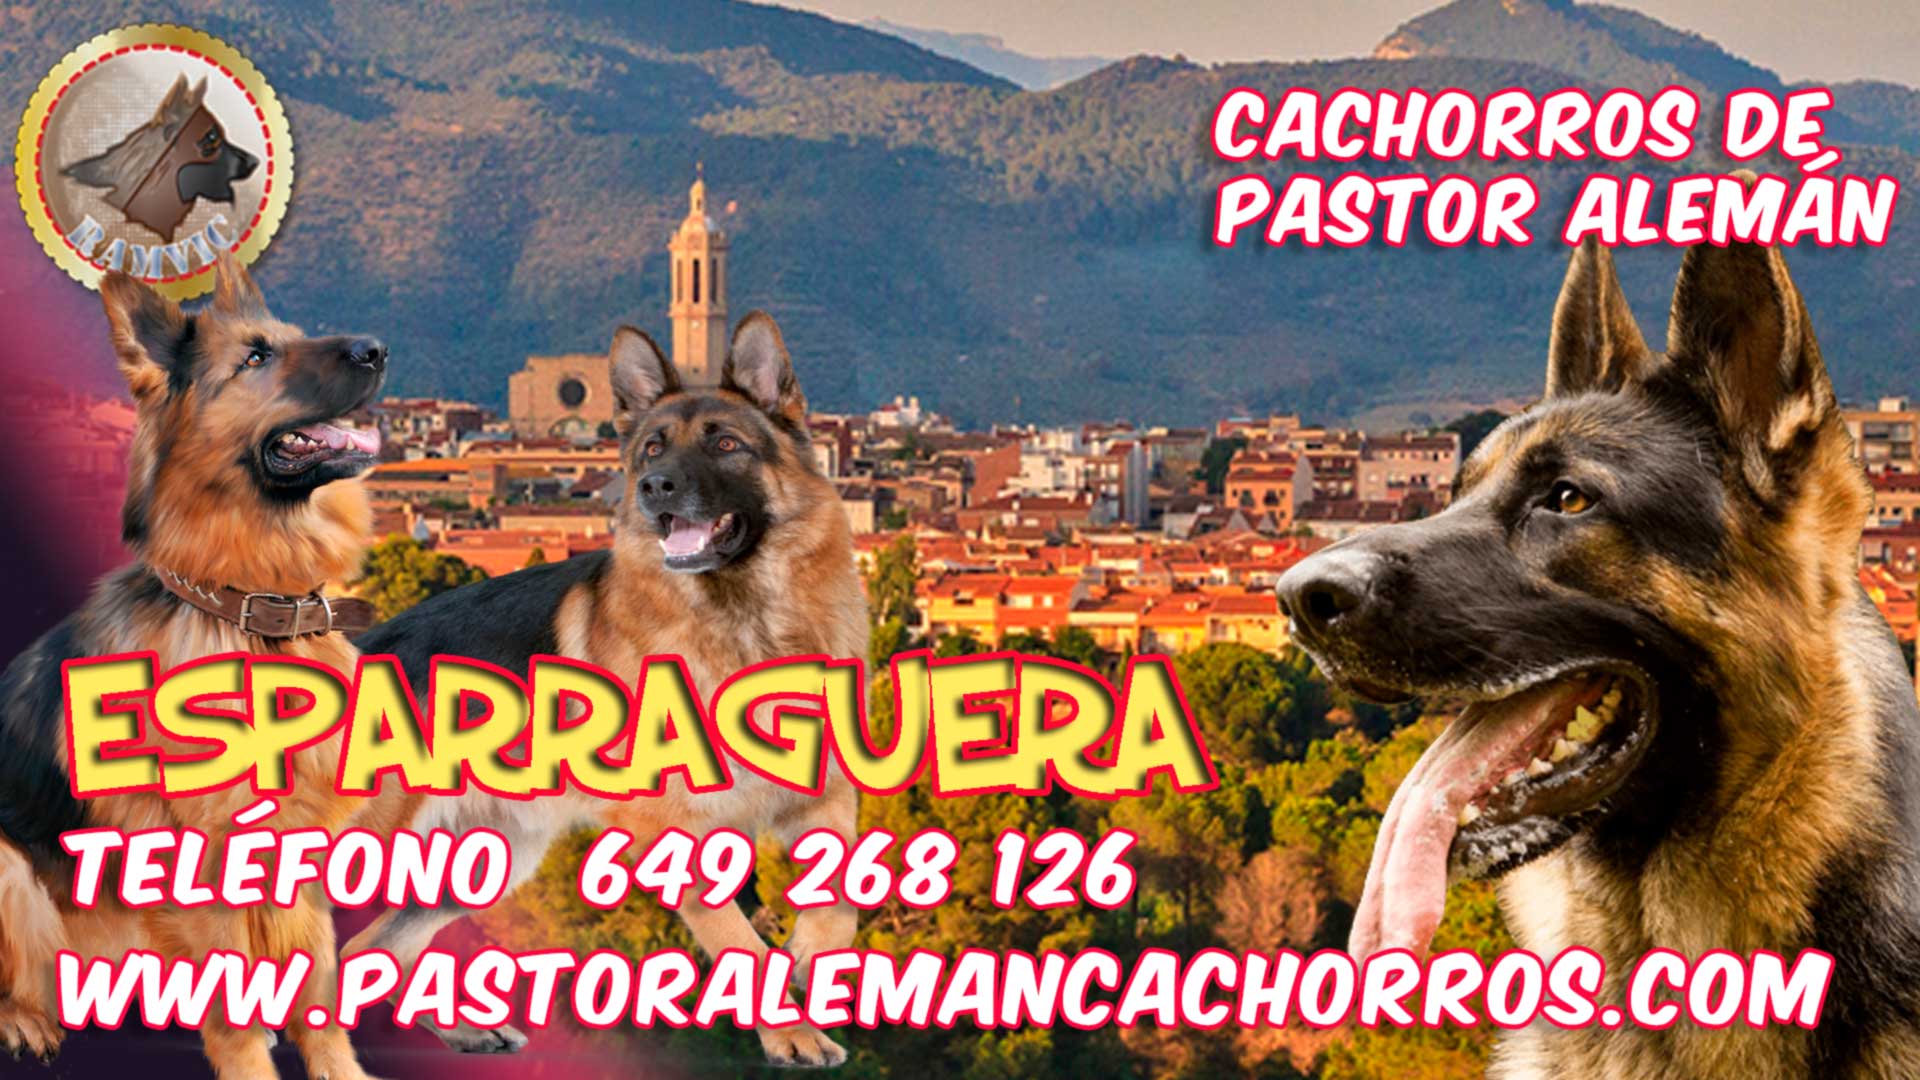 Cachorros de Pastor Alemán en Esparraguera